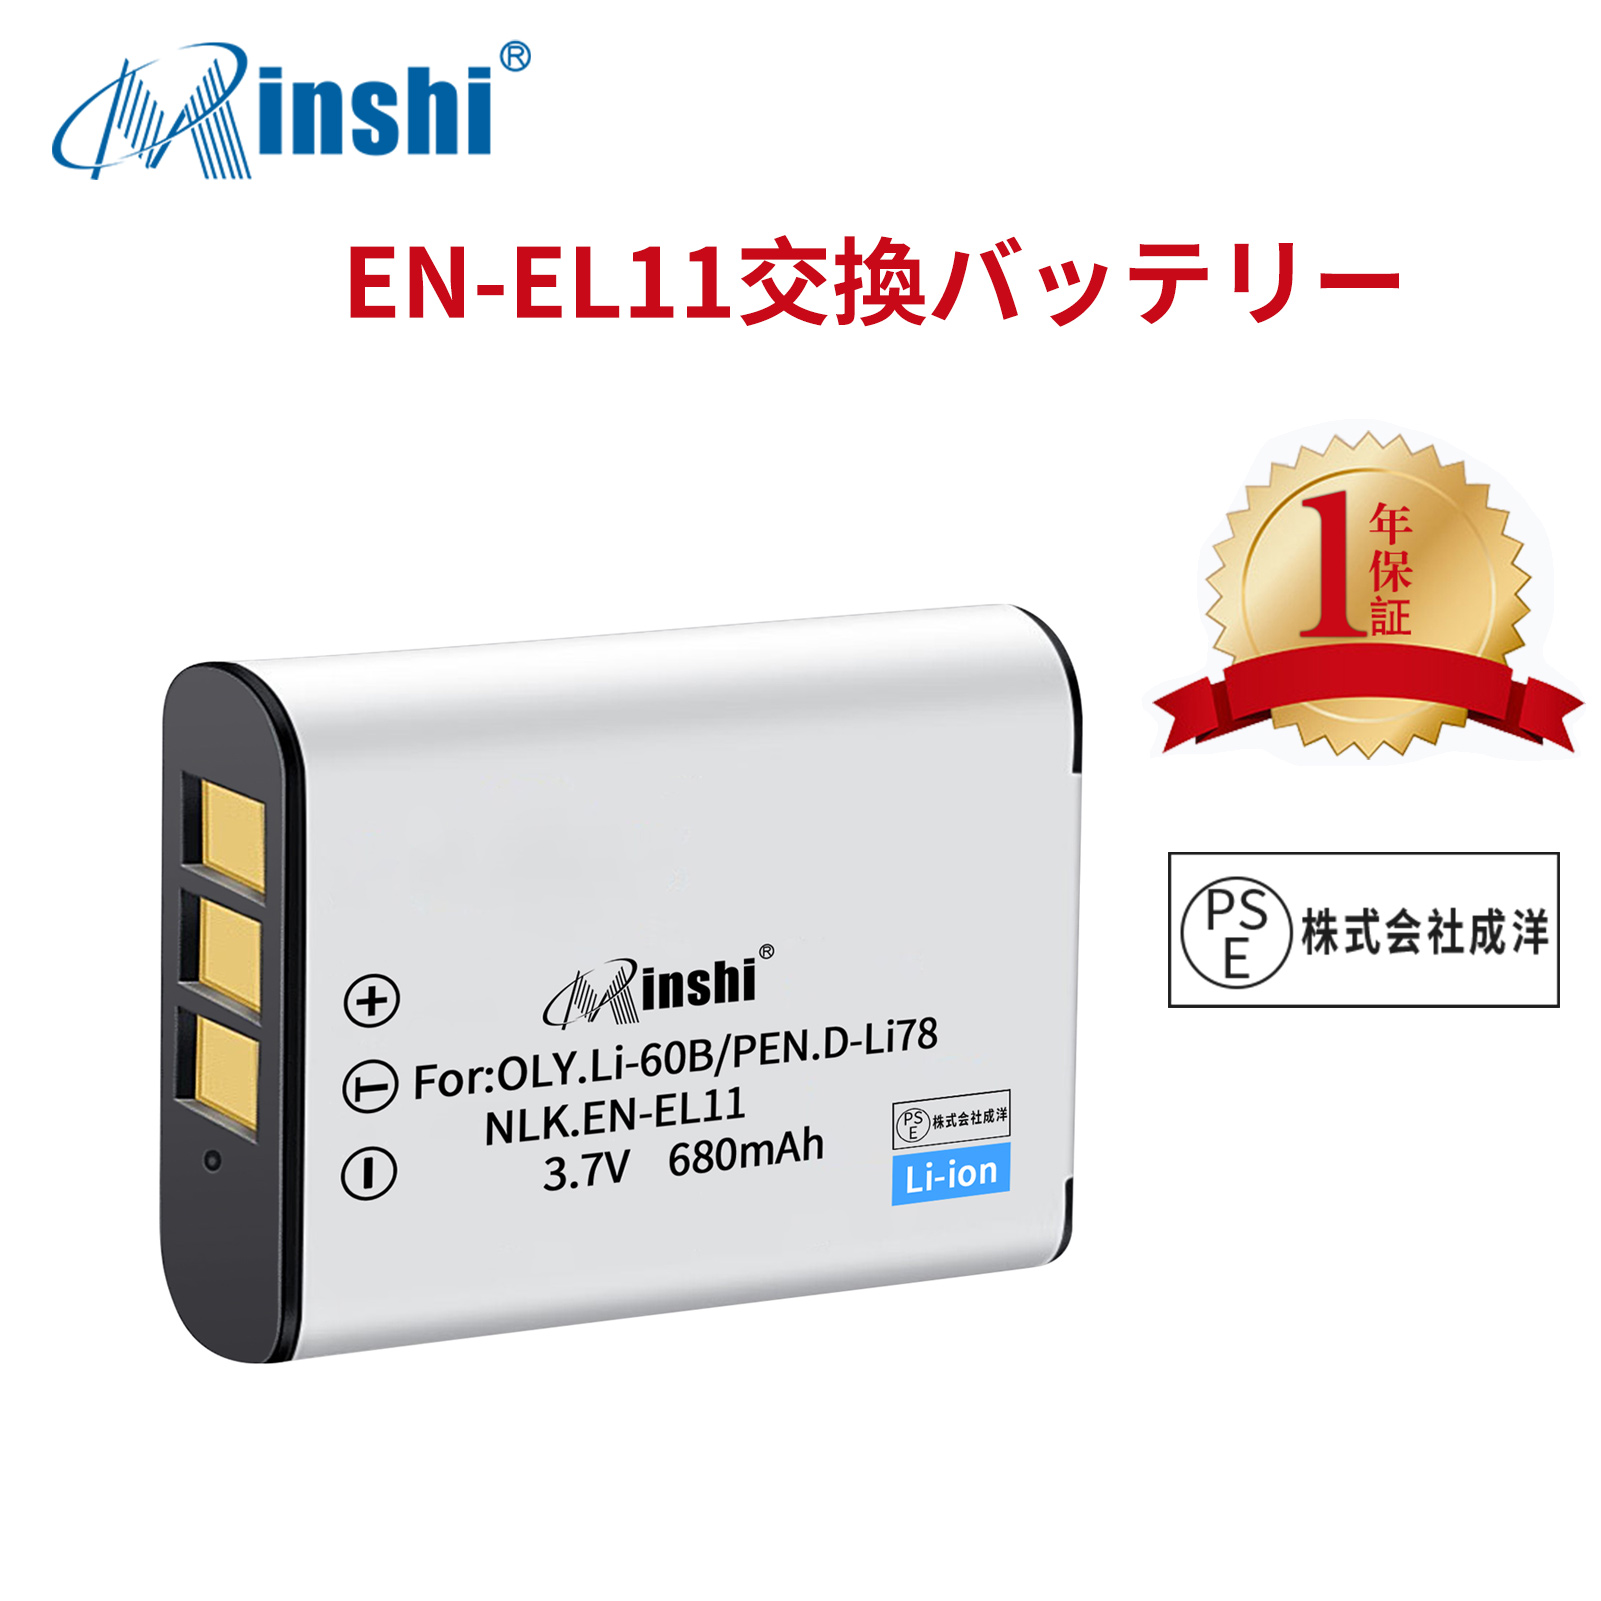 【1年保証】minshi NIKON Xacti DMX-E10 EN-EL11 【680mAh 3.7V】PSE認定済 高品質交換用バッテリー オリジナル充電器との互換性がない